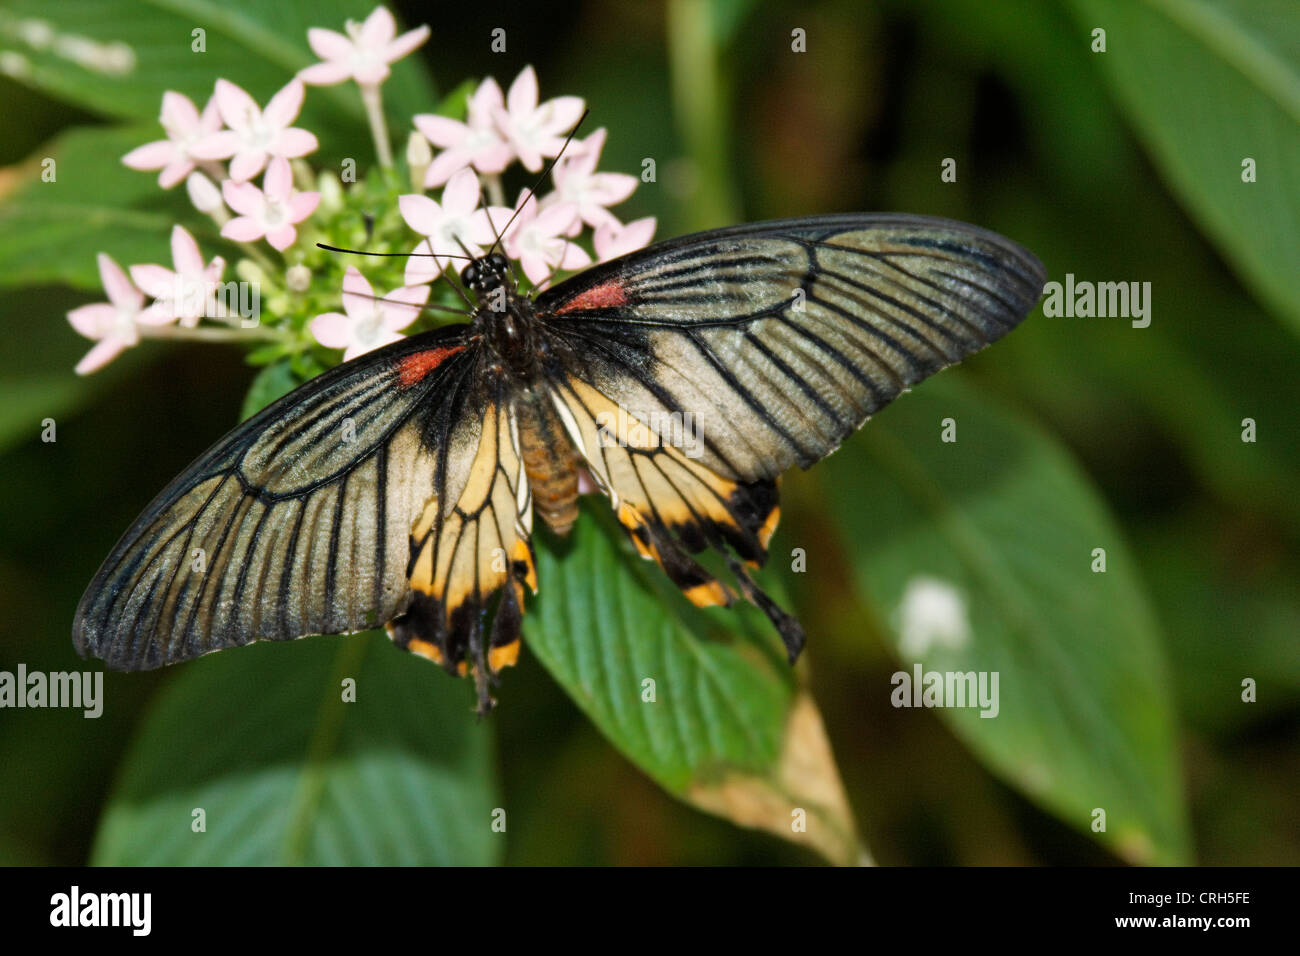 Schmetterlinge in der Natur - butterfly in nature Schmetterling - Butterfly Stock Photo